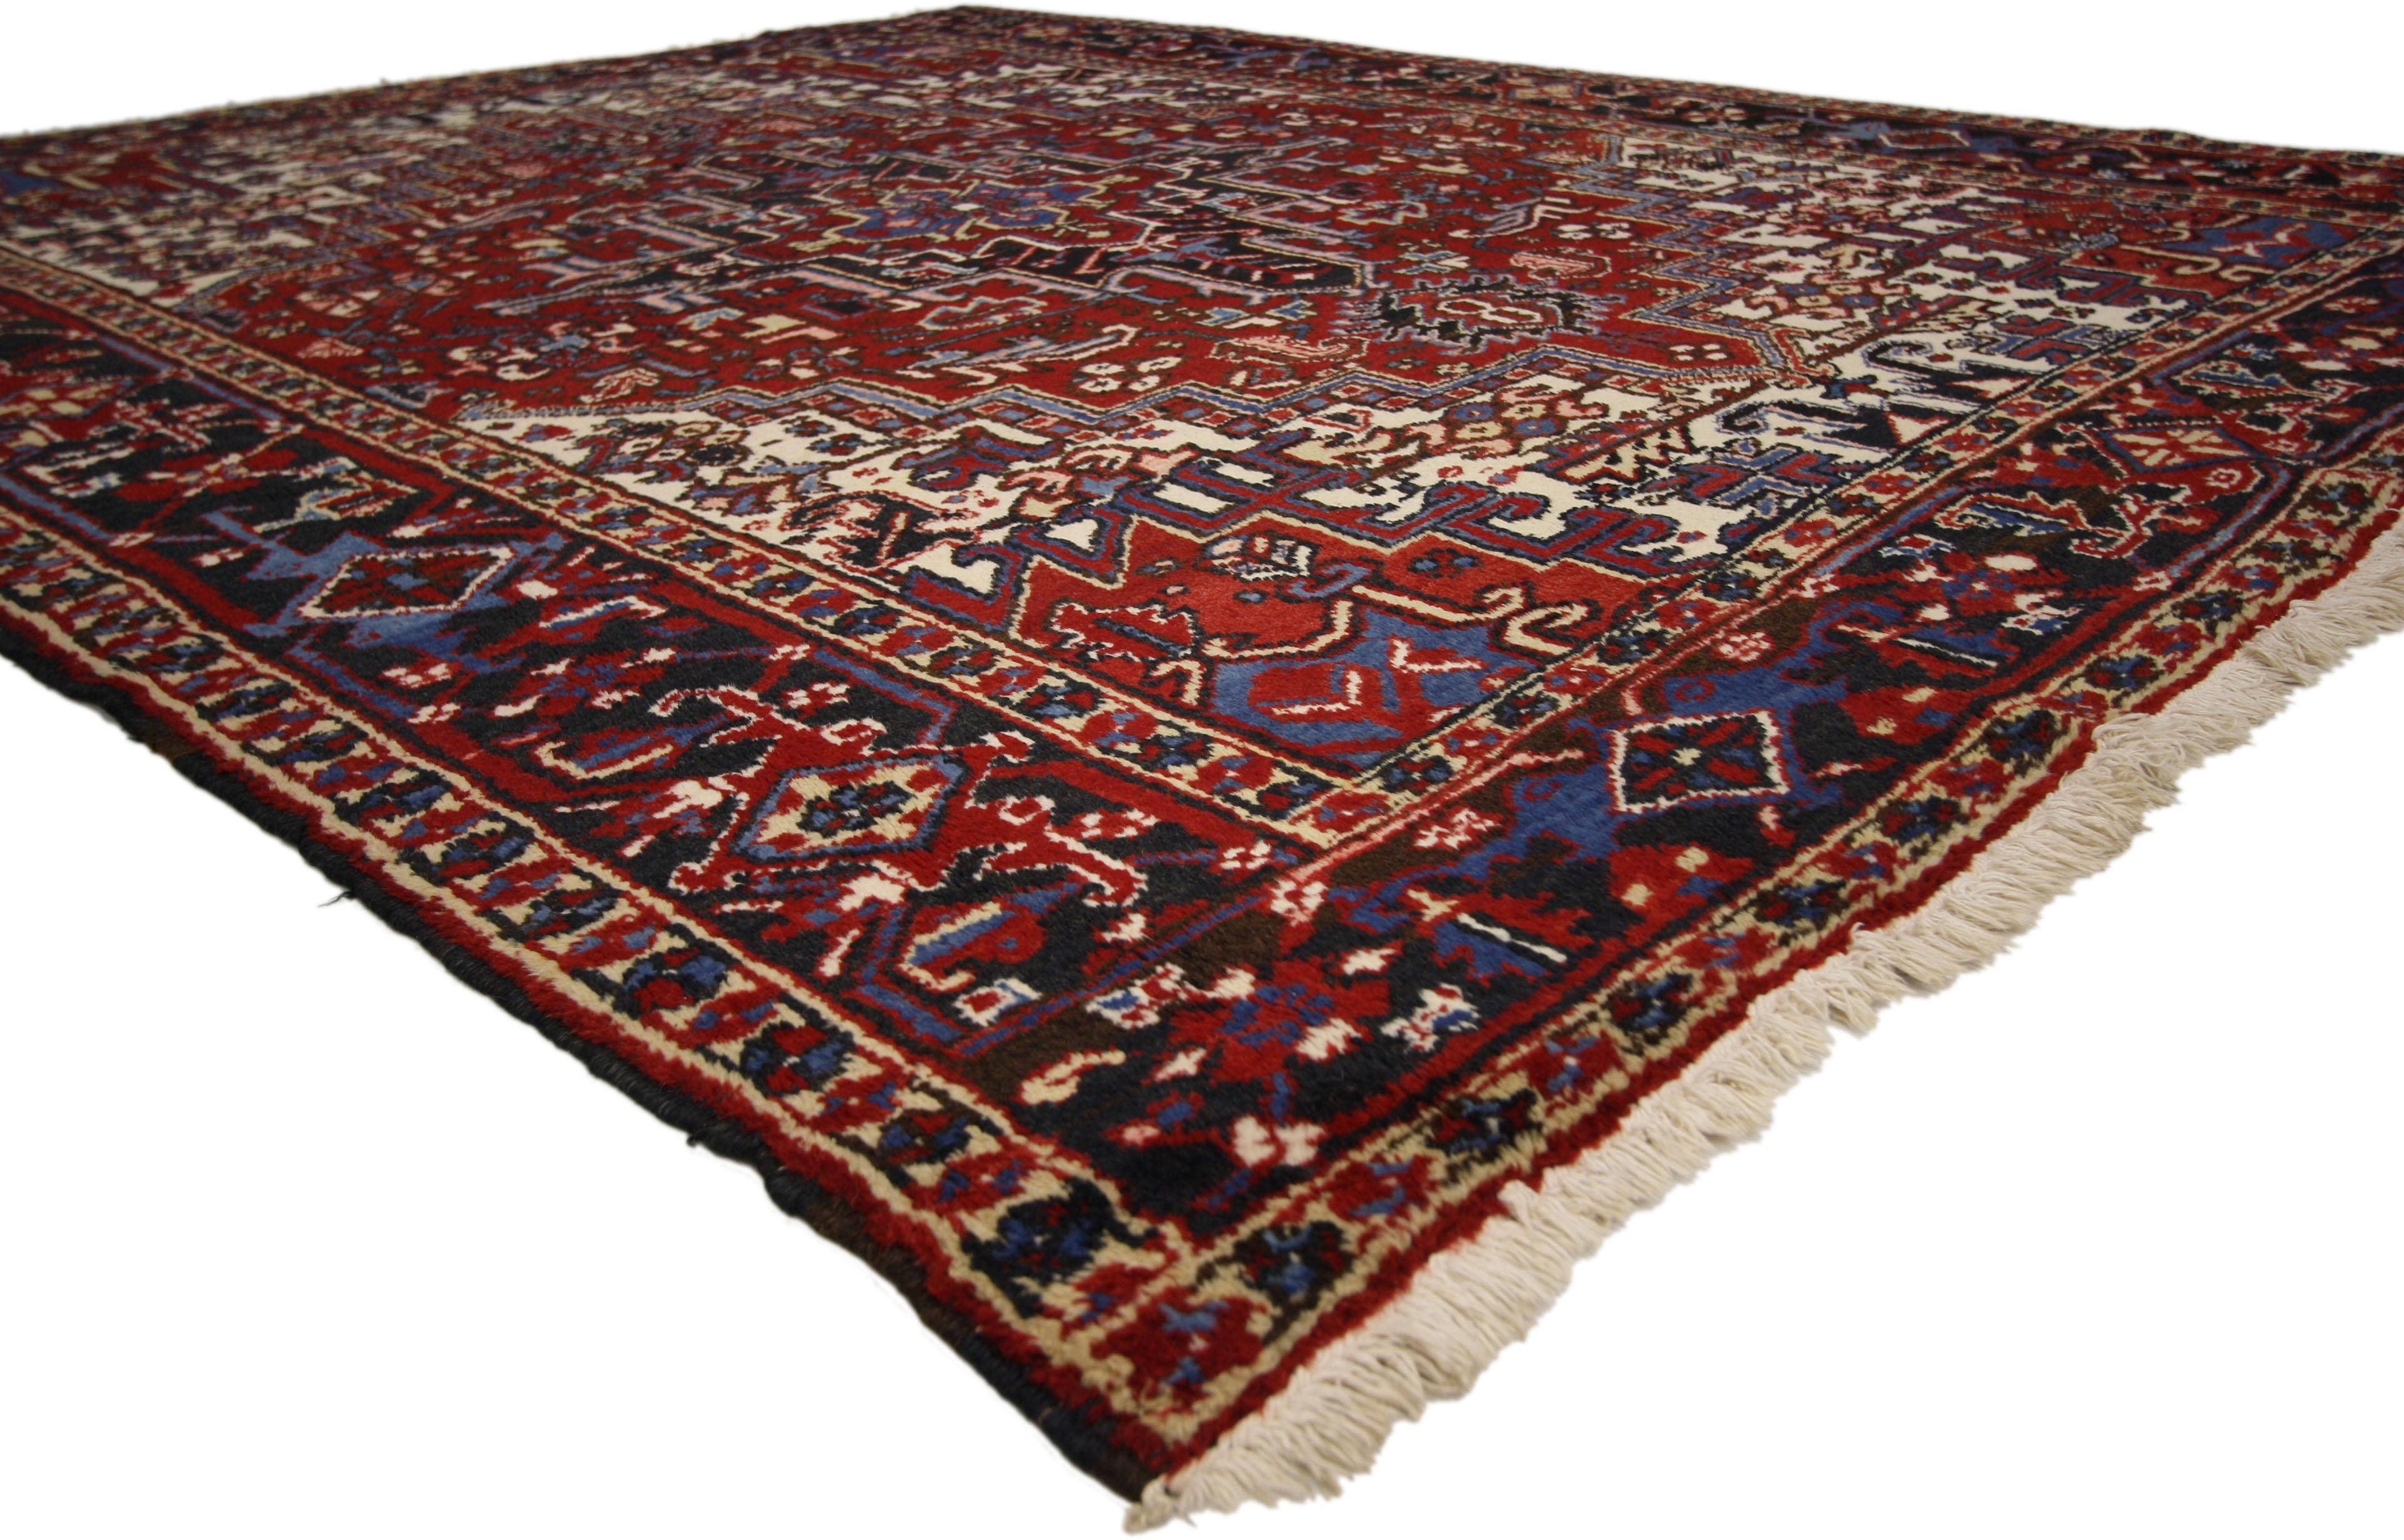 71255, tapis vintage Persian Heriz de style Manor House et Tudor. Ce tapis Persan Heriz vintage présente un style moderne du milieu du siècle dans des couleurs traditionnelles. Rendu en rouge, marine, bleu et ivoire avec des accents de brun. Ce